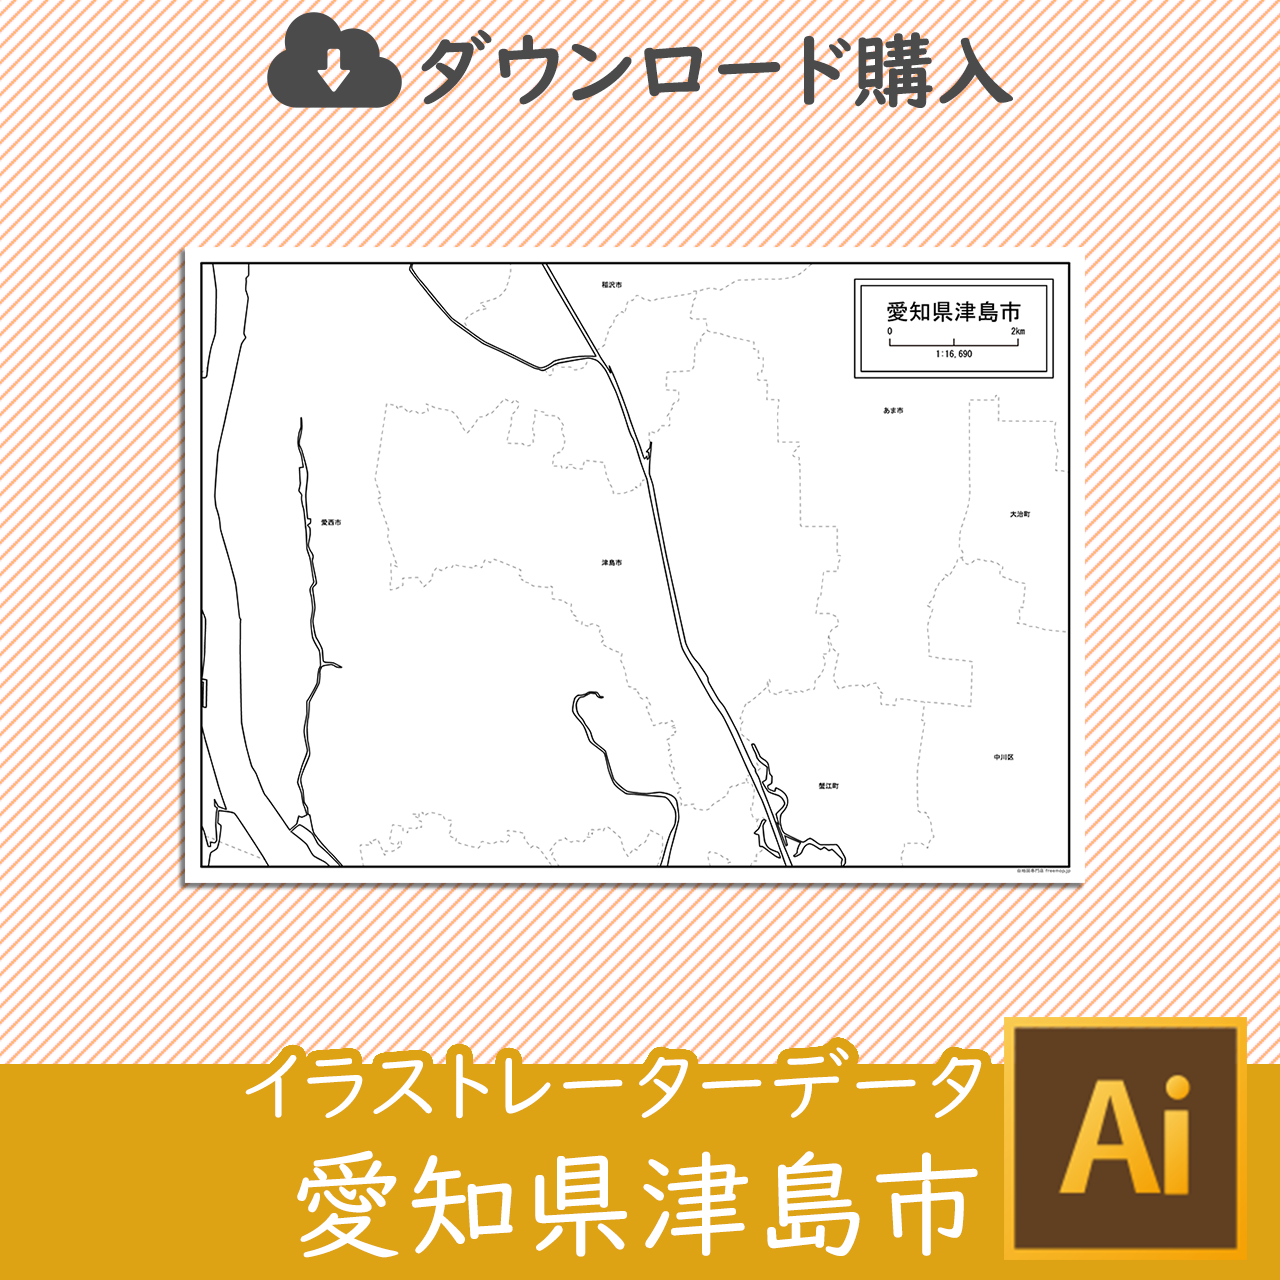 津島市のaiデータのサムネイル画像